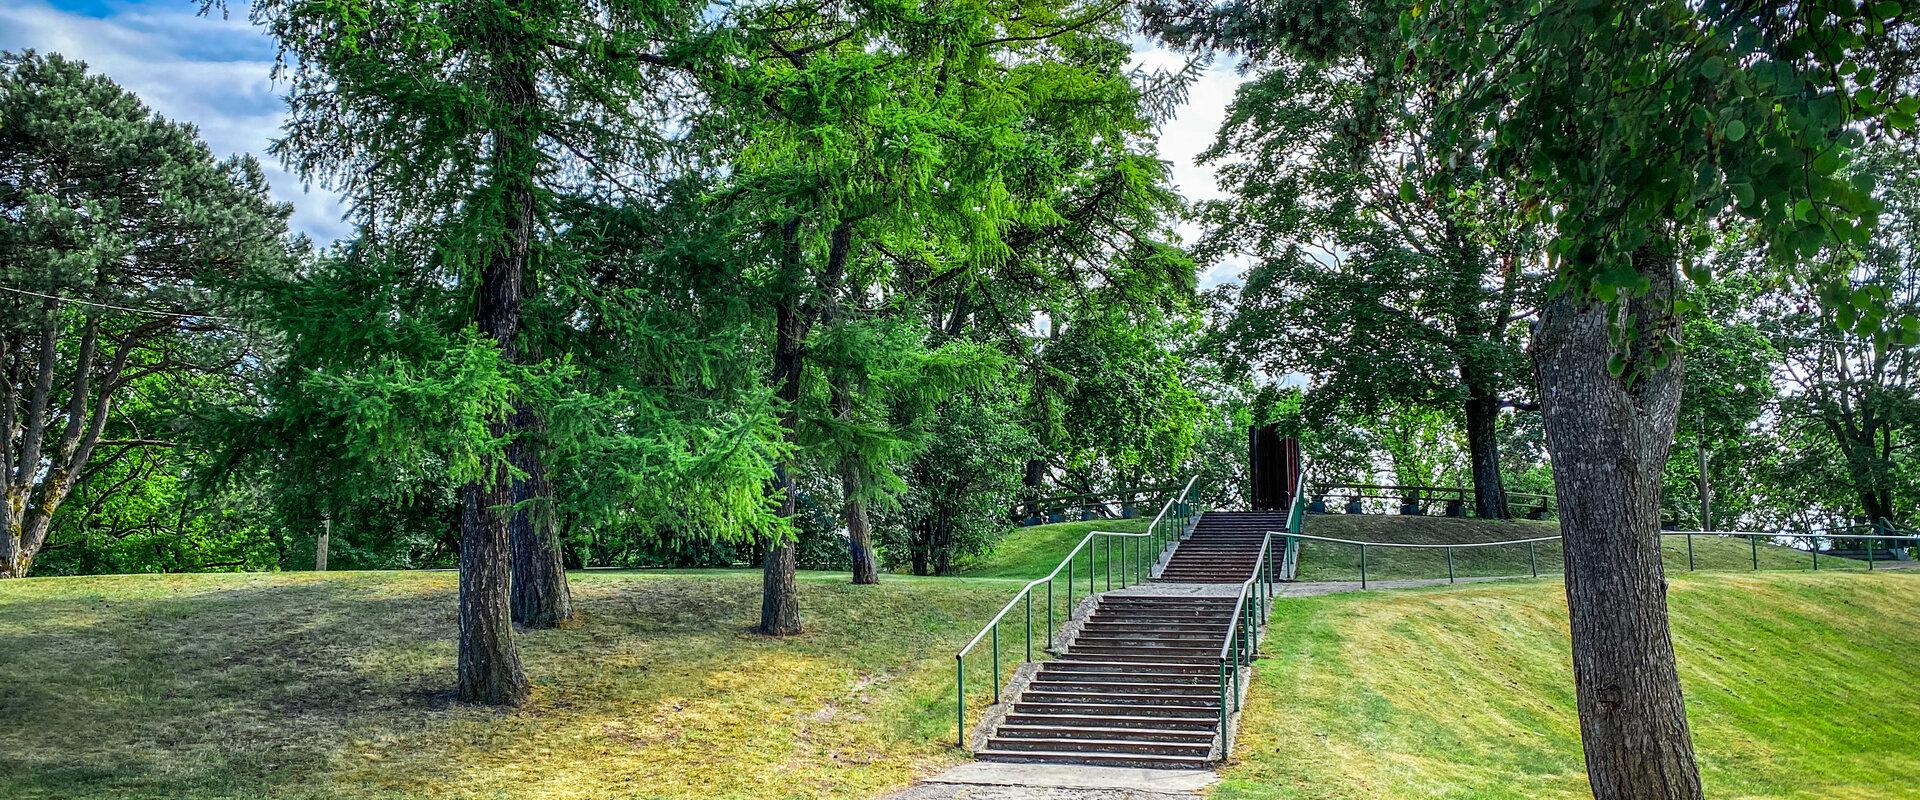 Pieni Munamäen puisto on Pärnun kaupungin yksi kuudesta suojelunalaisesta puistosta. Tämä vanha puisto on kaupungin korkein paikka. Puiston rakentamin